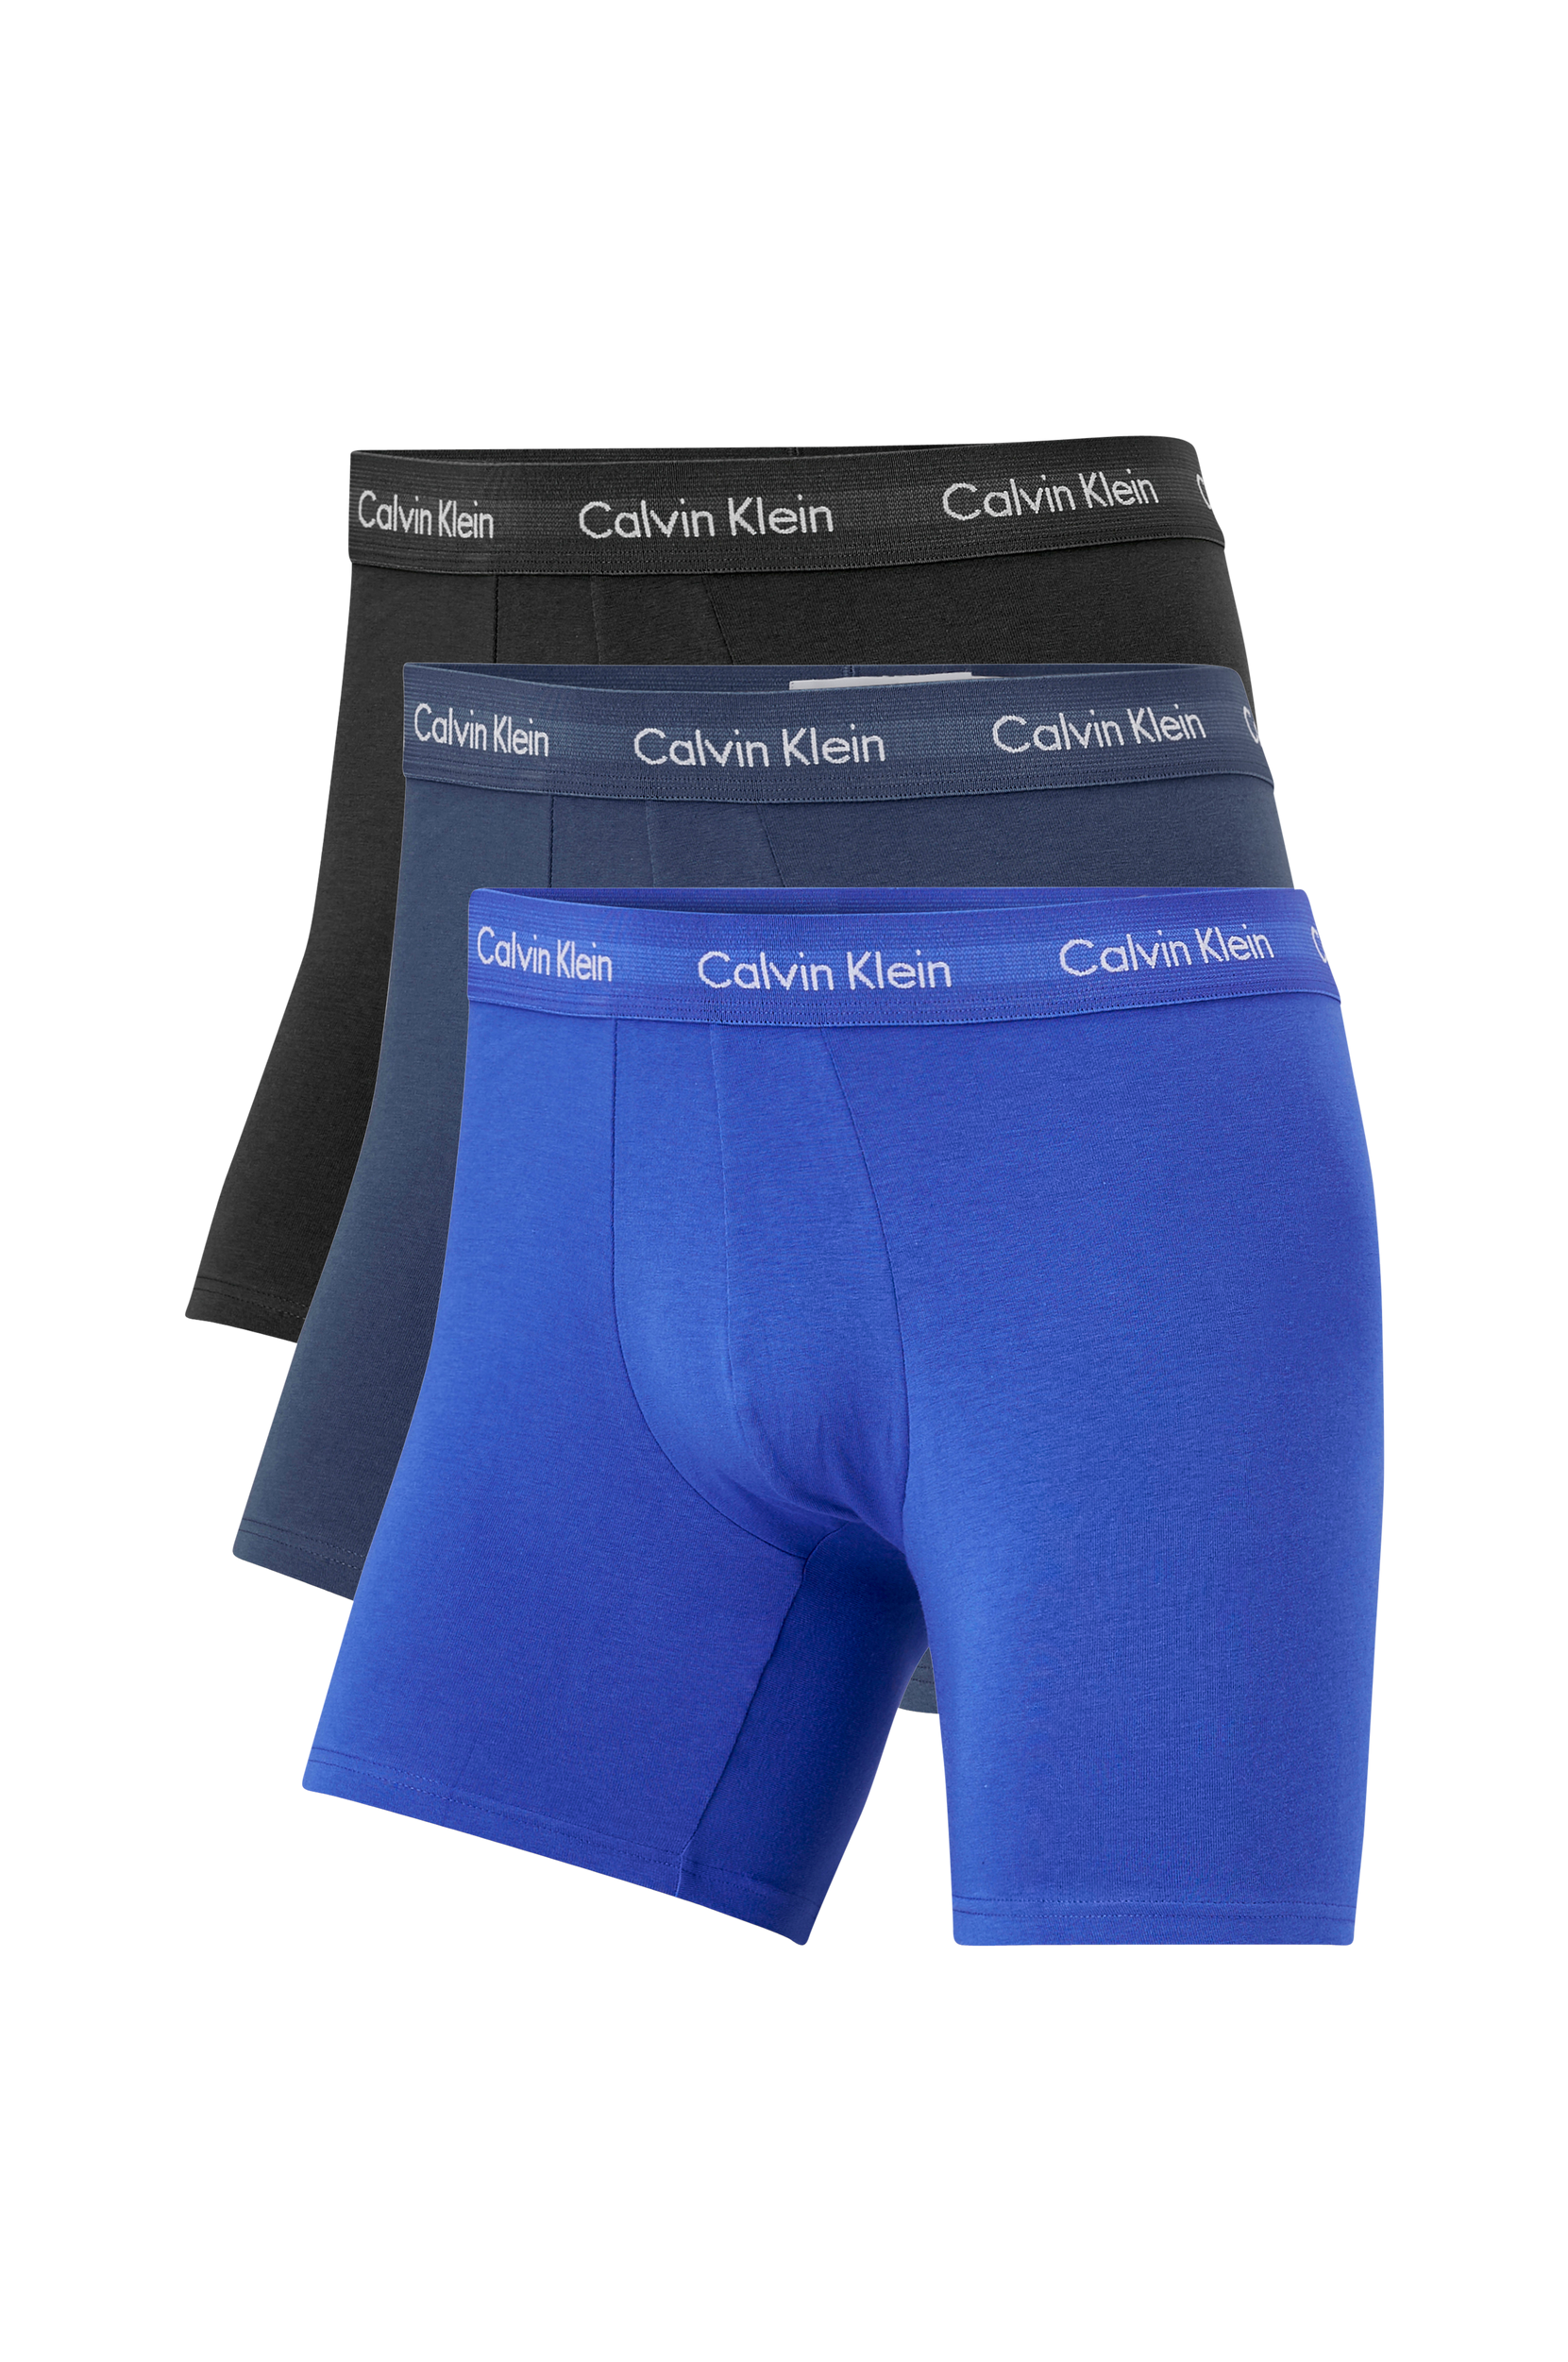 Talje stamtavle Trække ud Calvin Klein - Underbukser Cotton Stretch Boxer Briefs 3-pak - Blå - XL -  Boxershorts - Tøj til mænd (31176446)